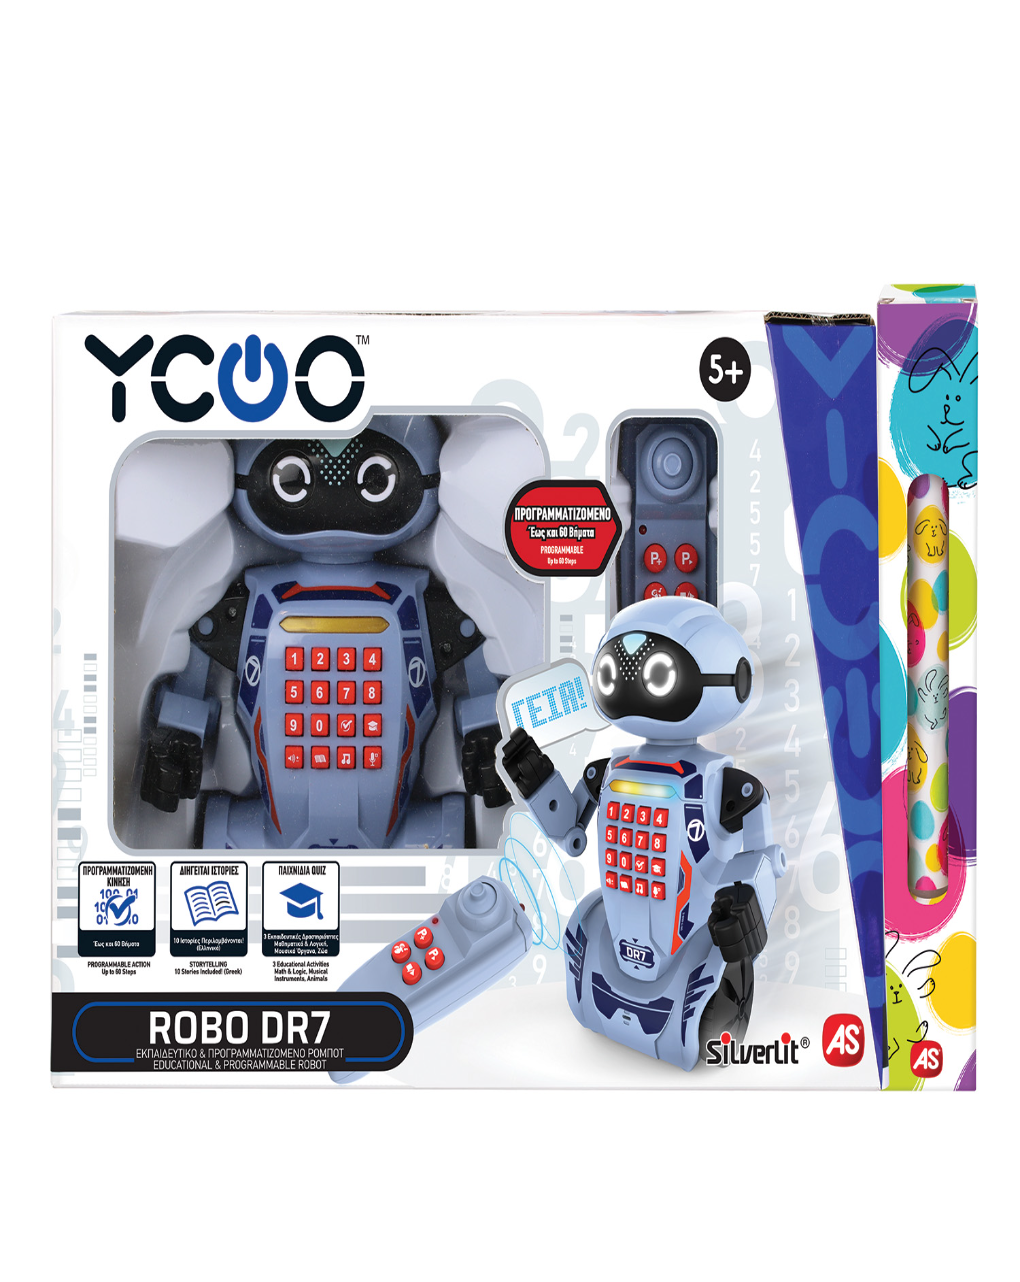 λαμπάδα silverlit ycoo robo dr7 τηλεκατευθυνόμενο ρομπότ - μιλάει ελληνικά 7530-88046